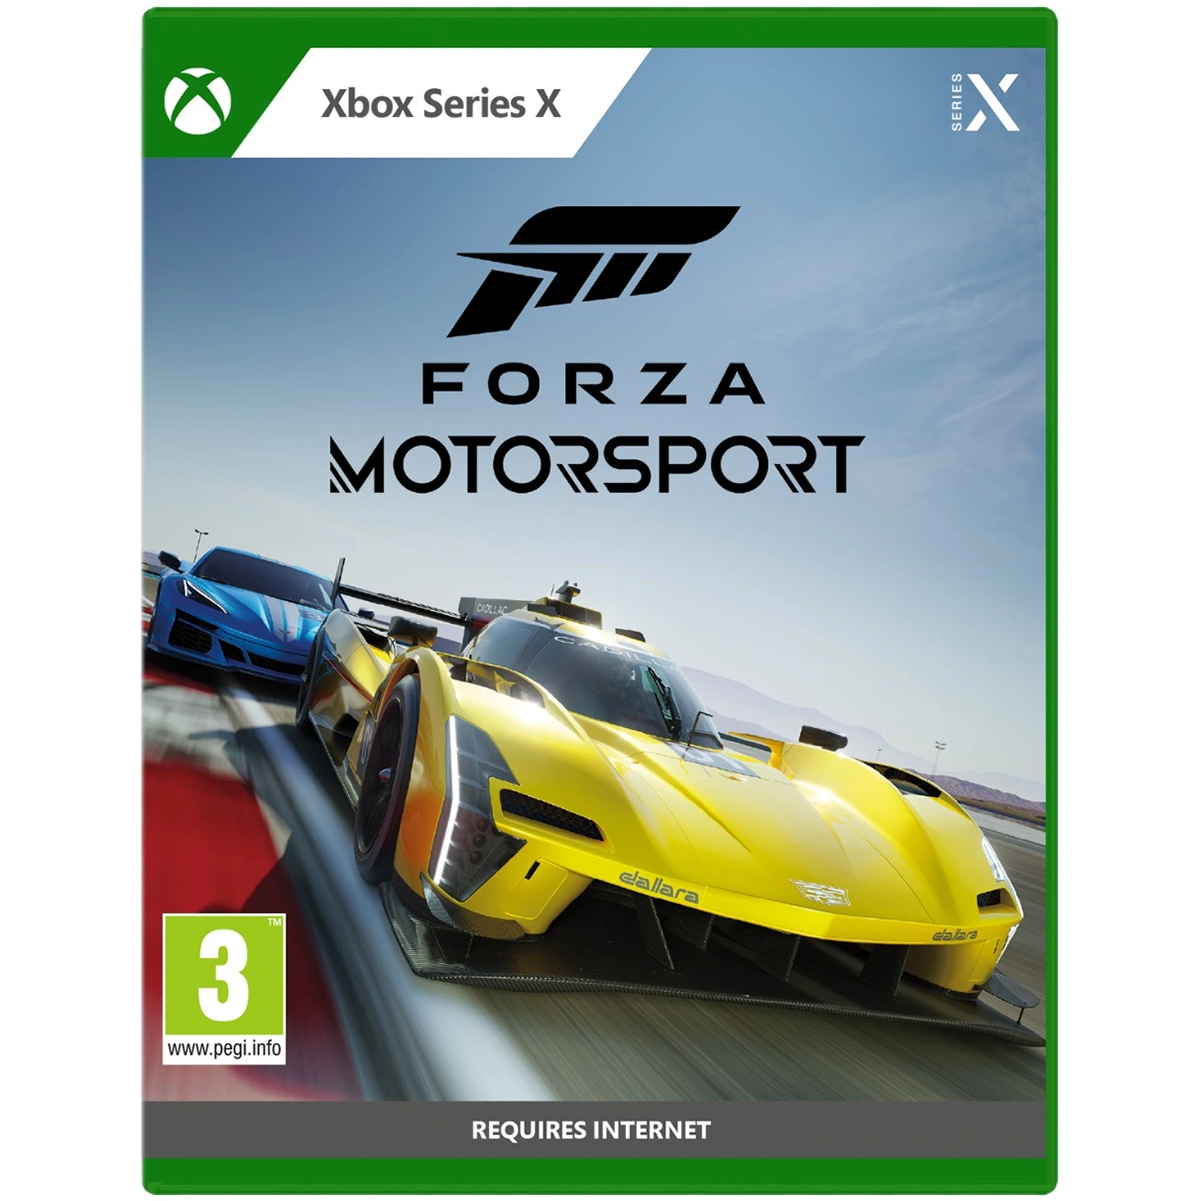 משחק Forza Motorsport לקונסולה Xbox Series X